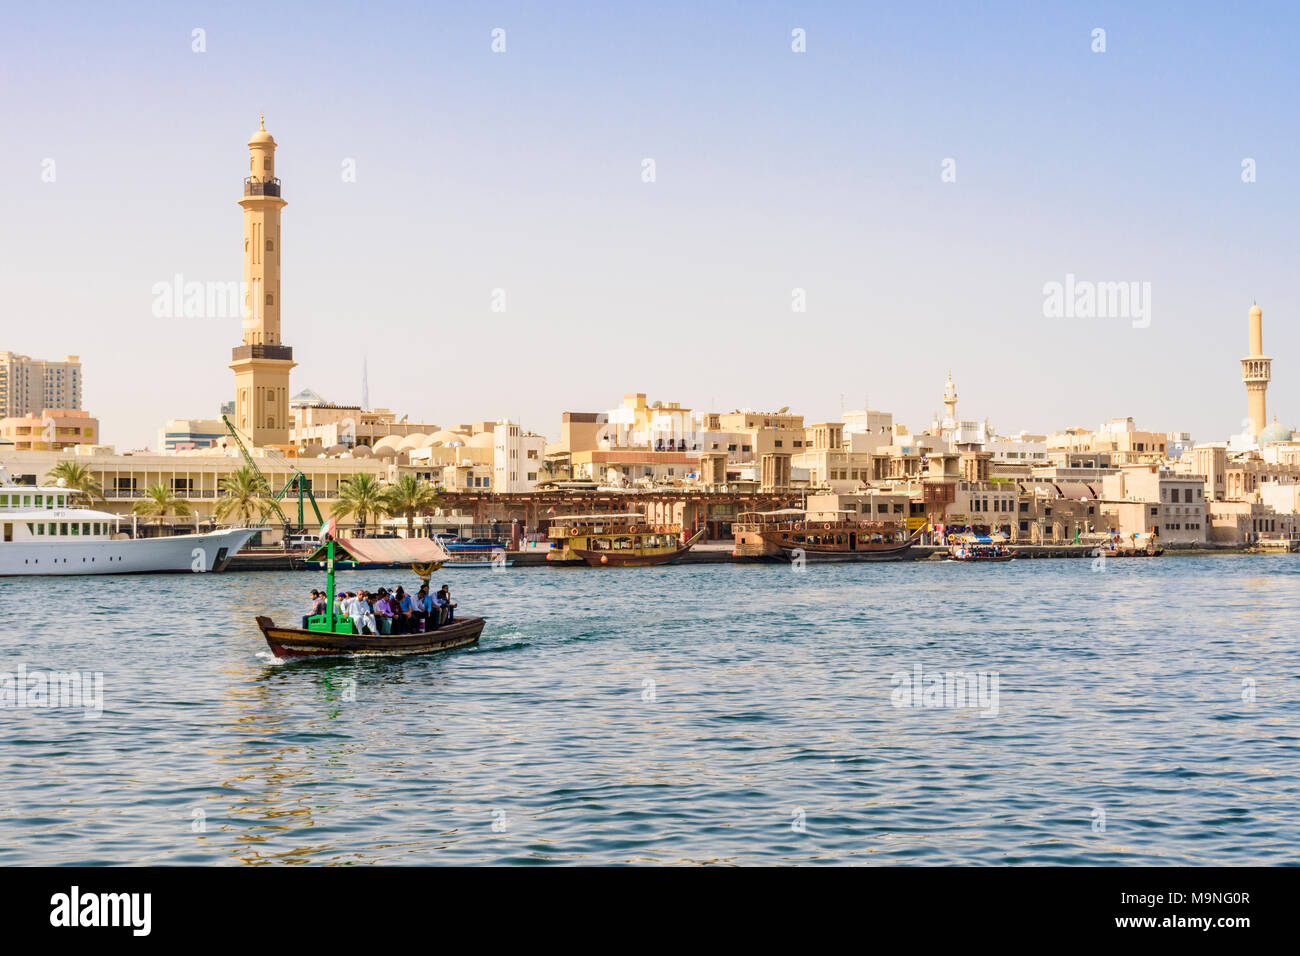 La crique de Dubaï abra bateau avec vue sur le minaret de la Grande Mosquée, la Crique de Dubaï, DUBAÏ, ÉMIRATS ARABES UNIS Banque D'Images